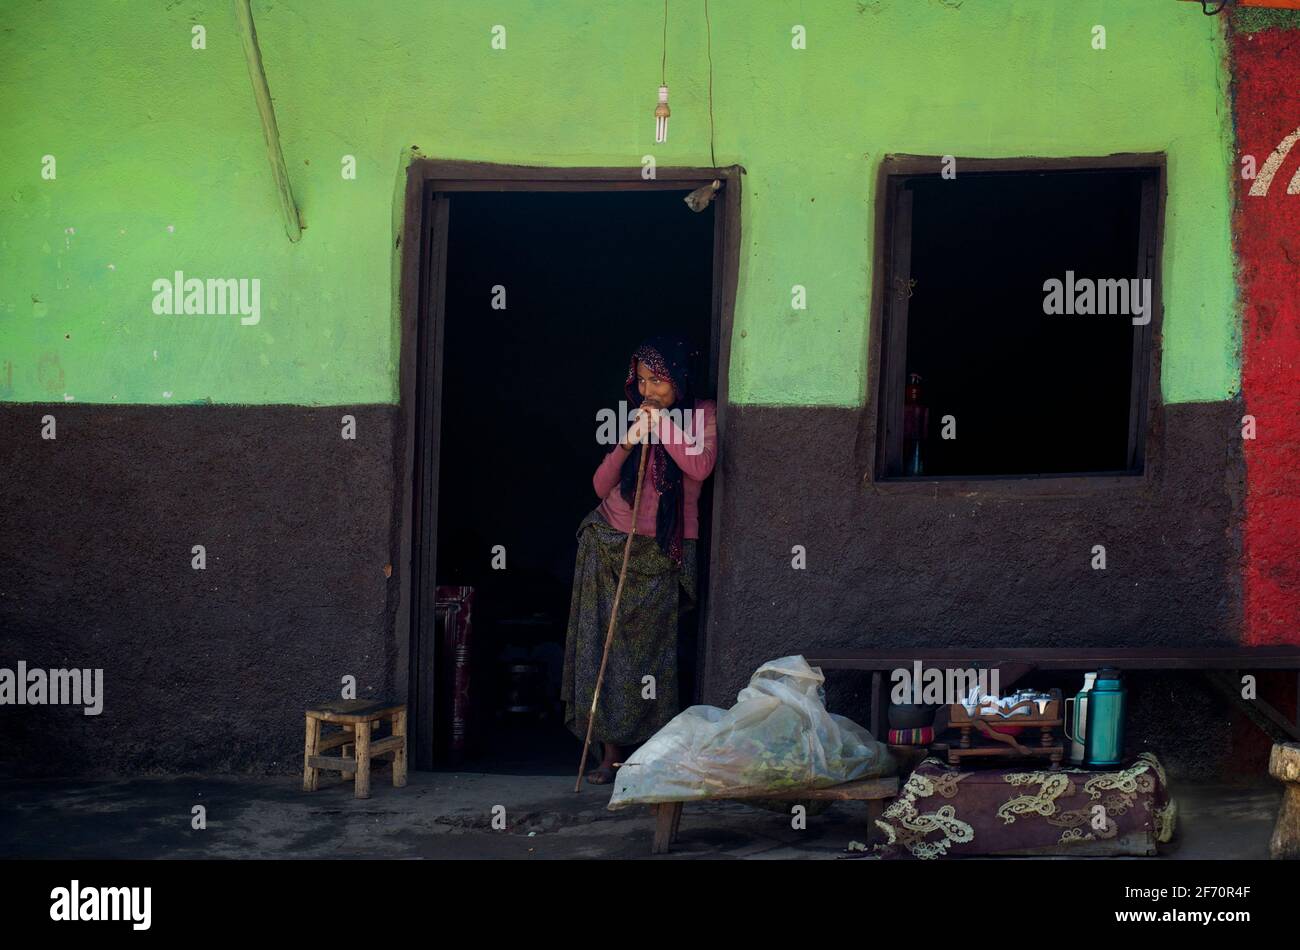 Ethiopian woman, in a shop doorwa, Kulubi, Oromia Region, Ethiopia Stock Photo